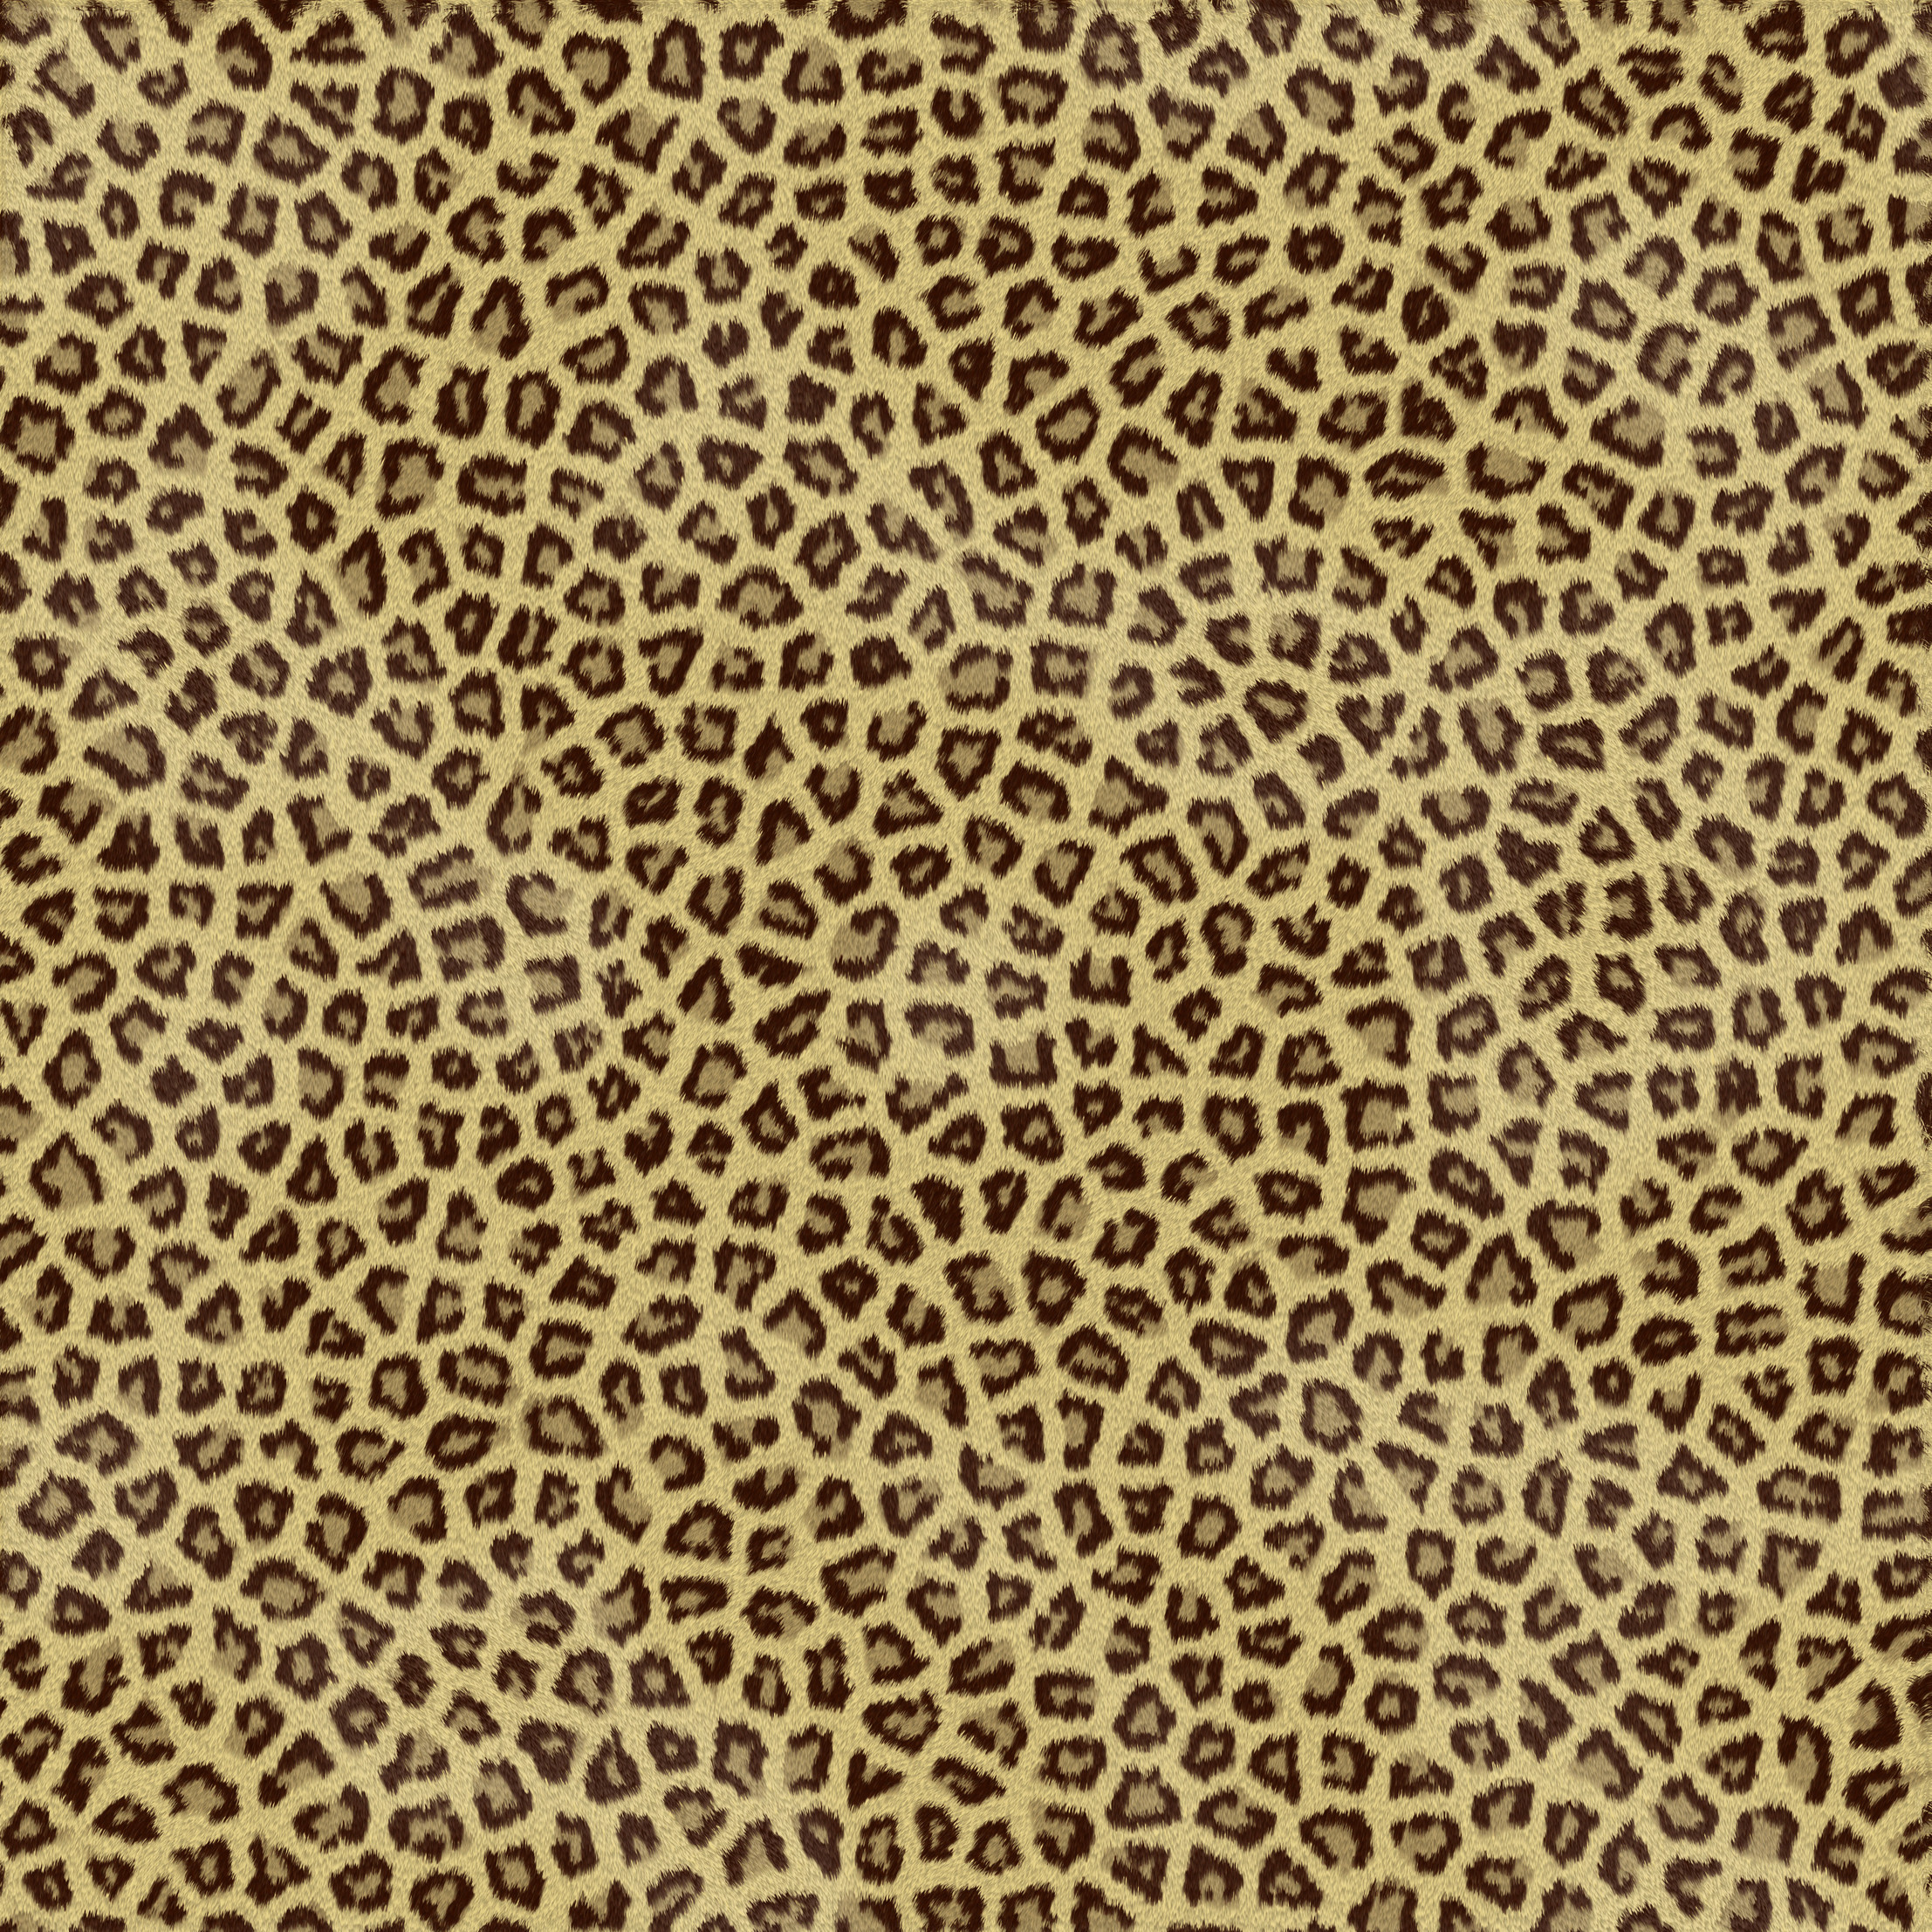  freewallpapersbizwallpaperstumblr backgrounds glitter cheetah print